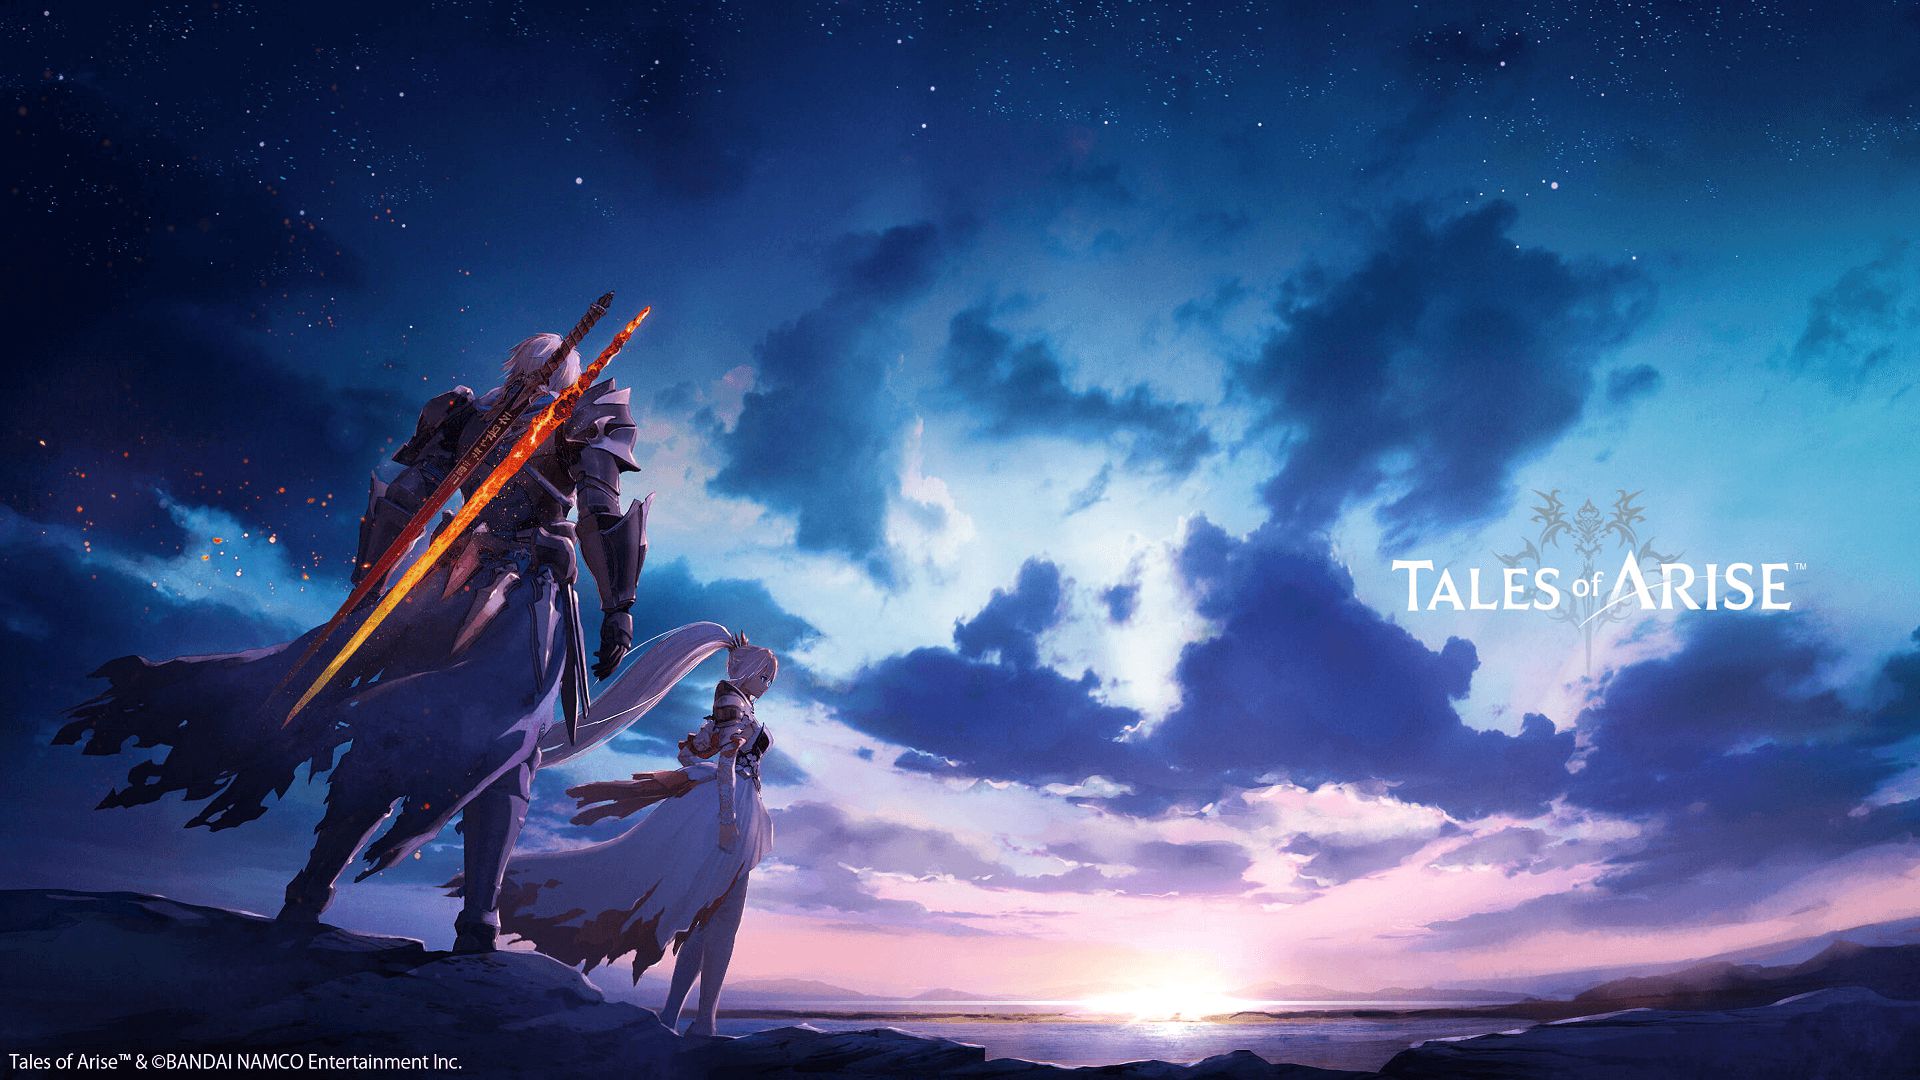 Bandai Namco confirma un nuevo Tales of en desarrollo